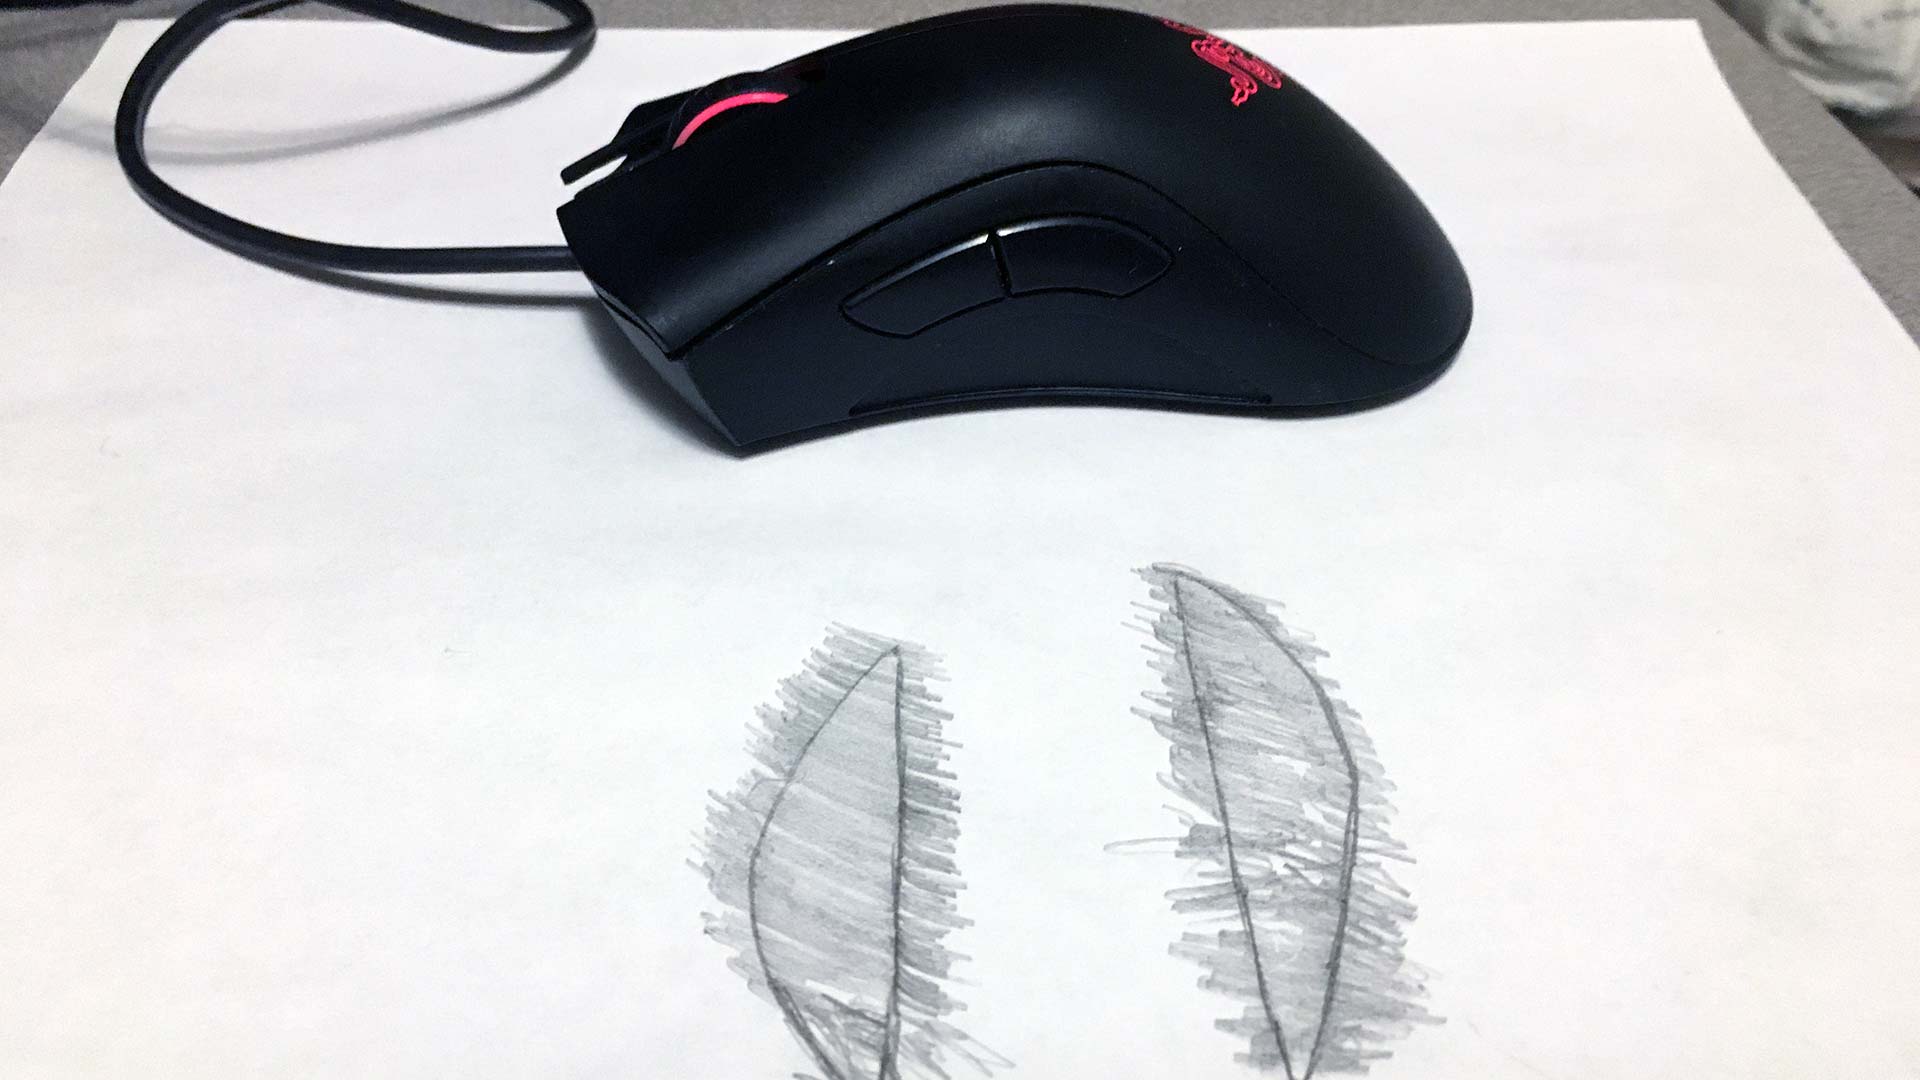 Razer Mouse Stencil.